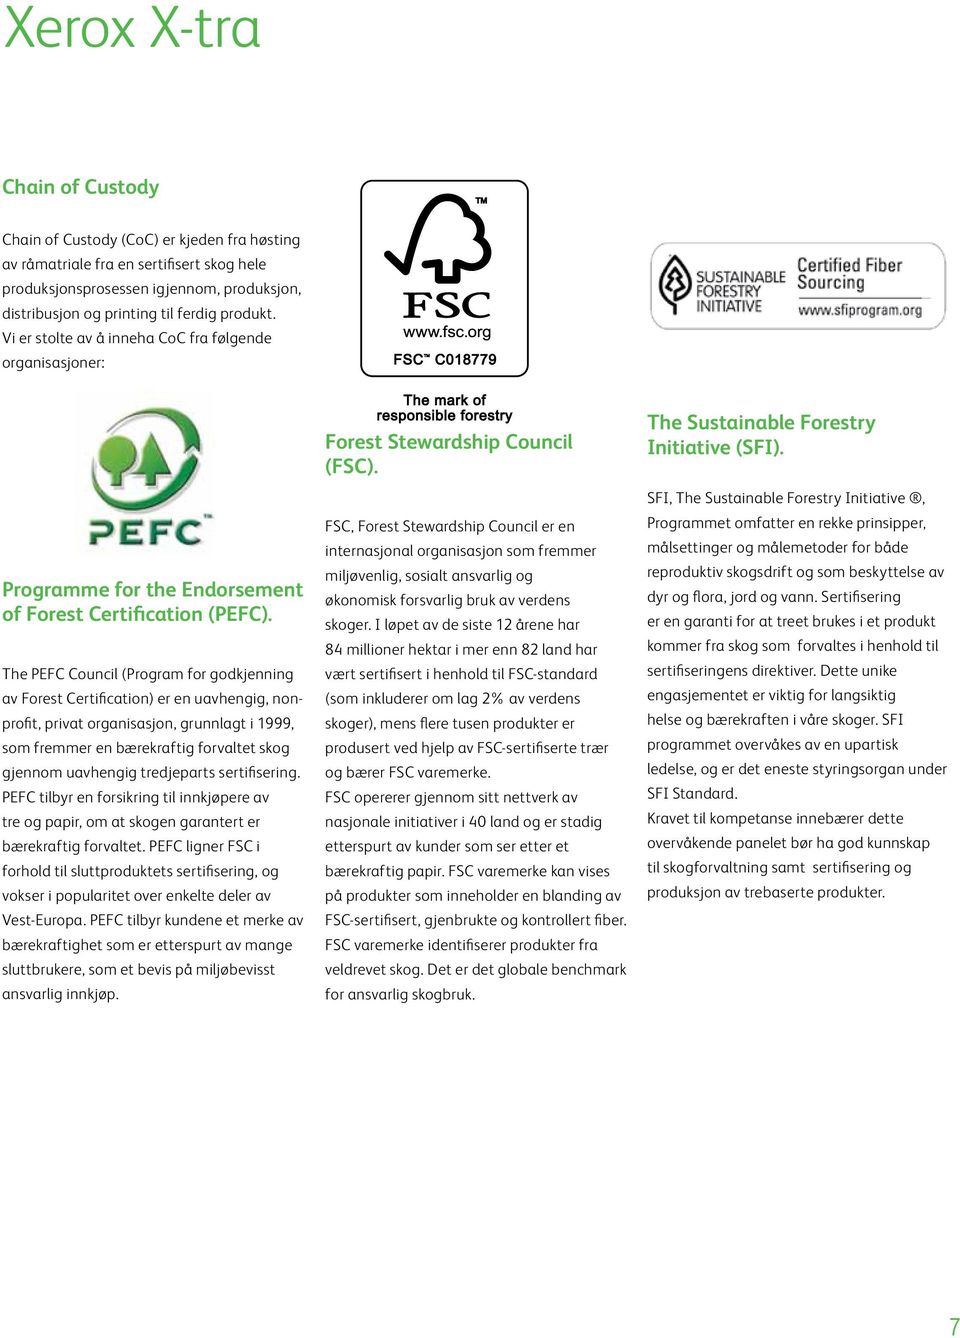 The PEFC Council (Program for godkjenning av Forest Certification) er en uavhengig, nonprofit, privat organisasjon, grunnlagt i 1999, som fremmer en bærekraftig forvaltet skog gjennom uavhengig